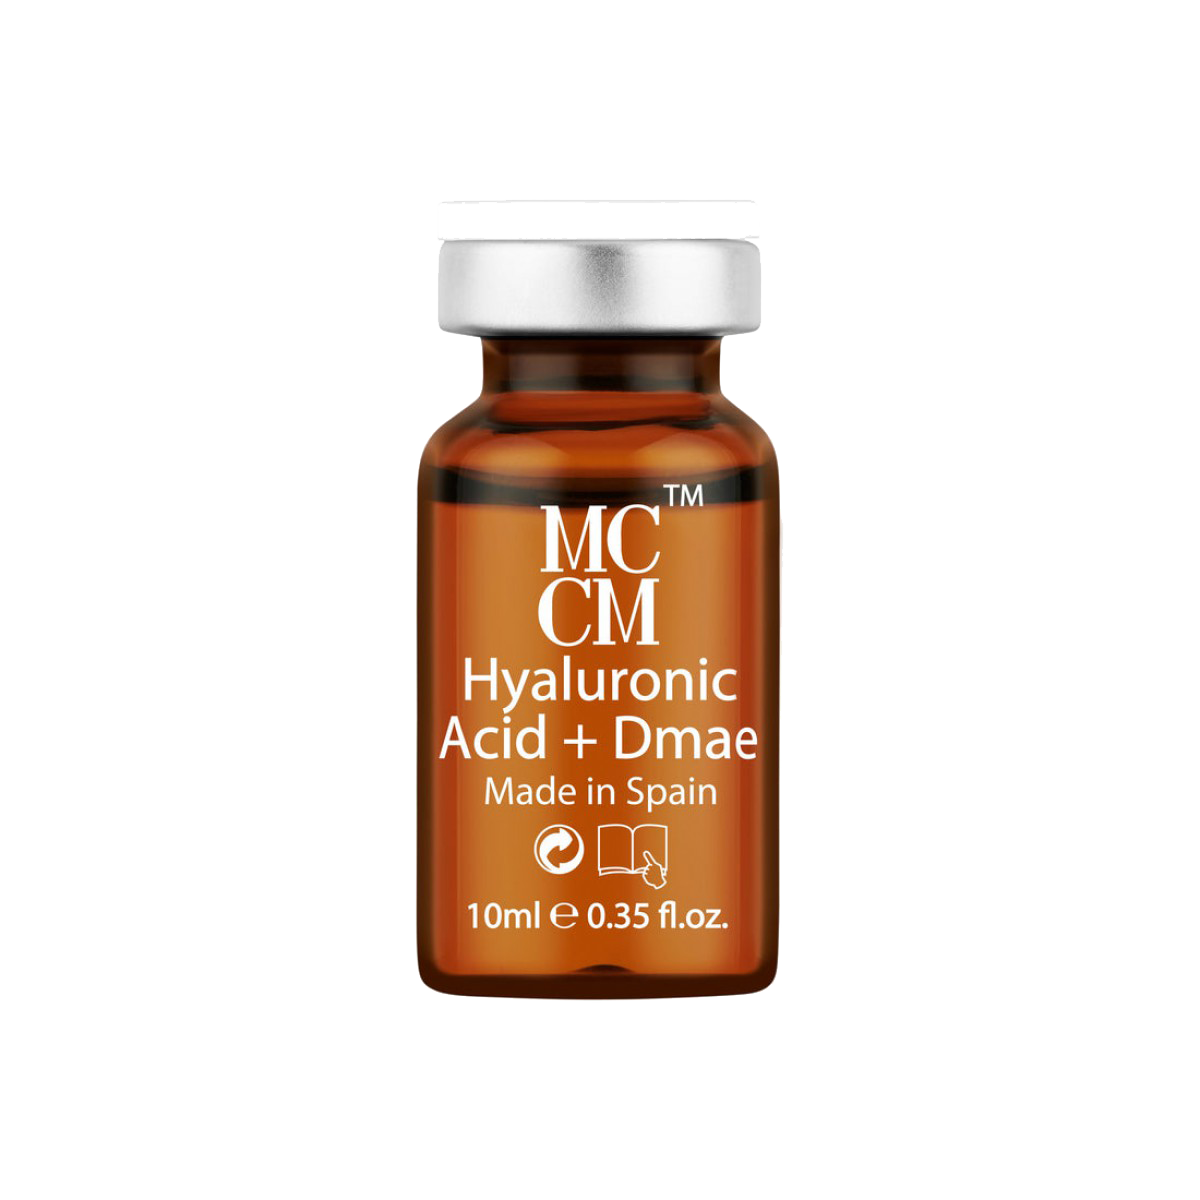 Hyaluronic Acid + Dmae